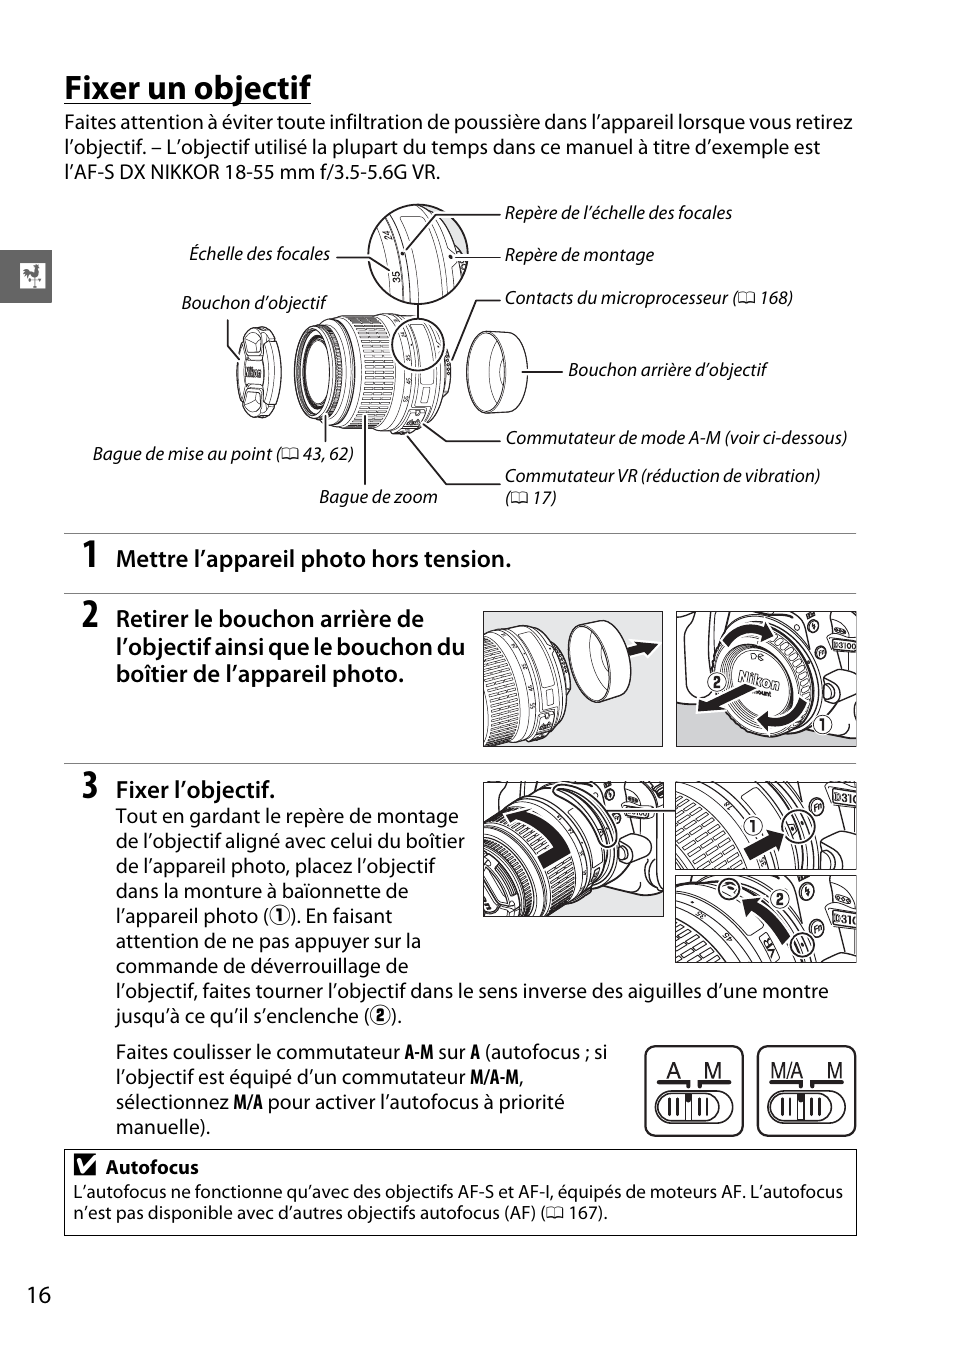 Fixer un objectif | Nikon D3100 Manuel d'utilisation | Page 32 / 224